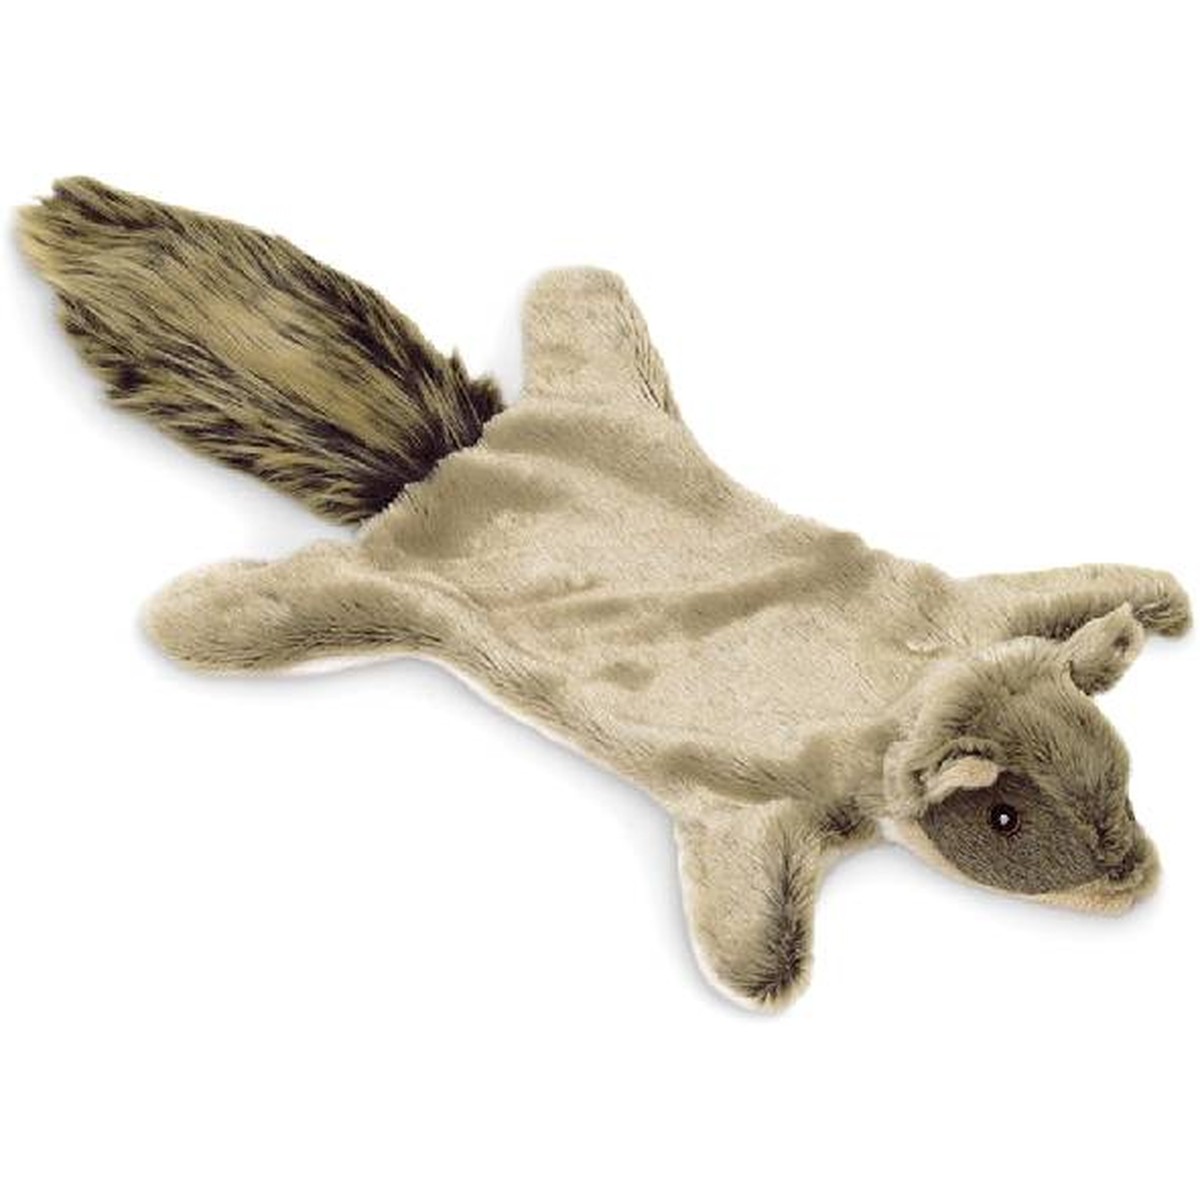   Ecureuil plat en peluche. 53 cm  53 cm